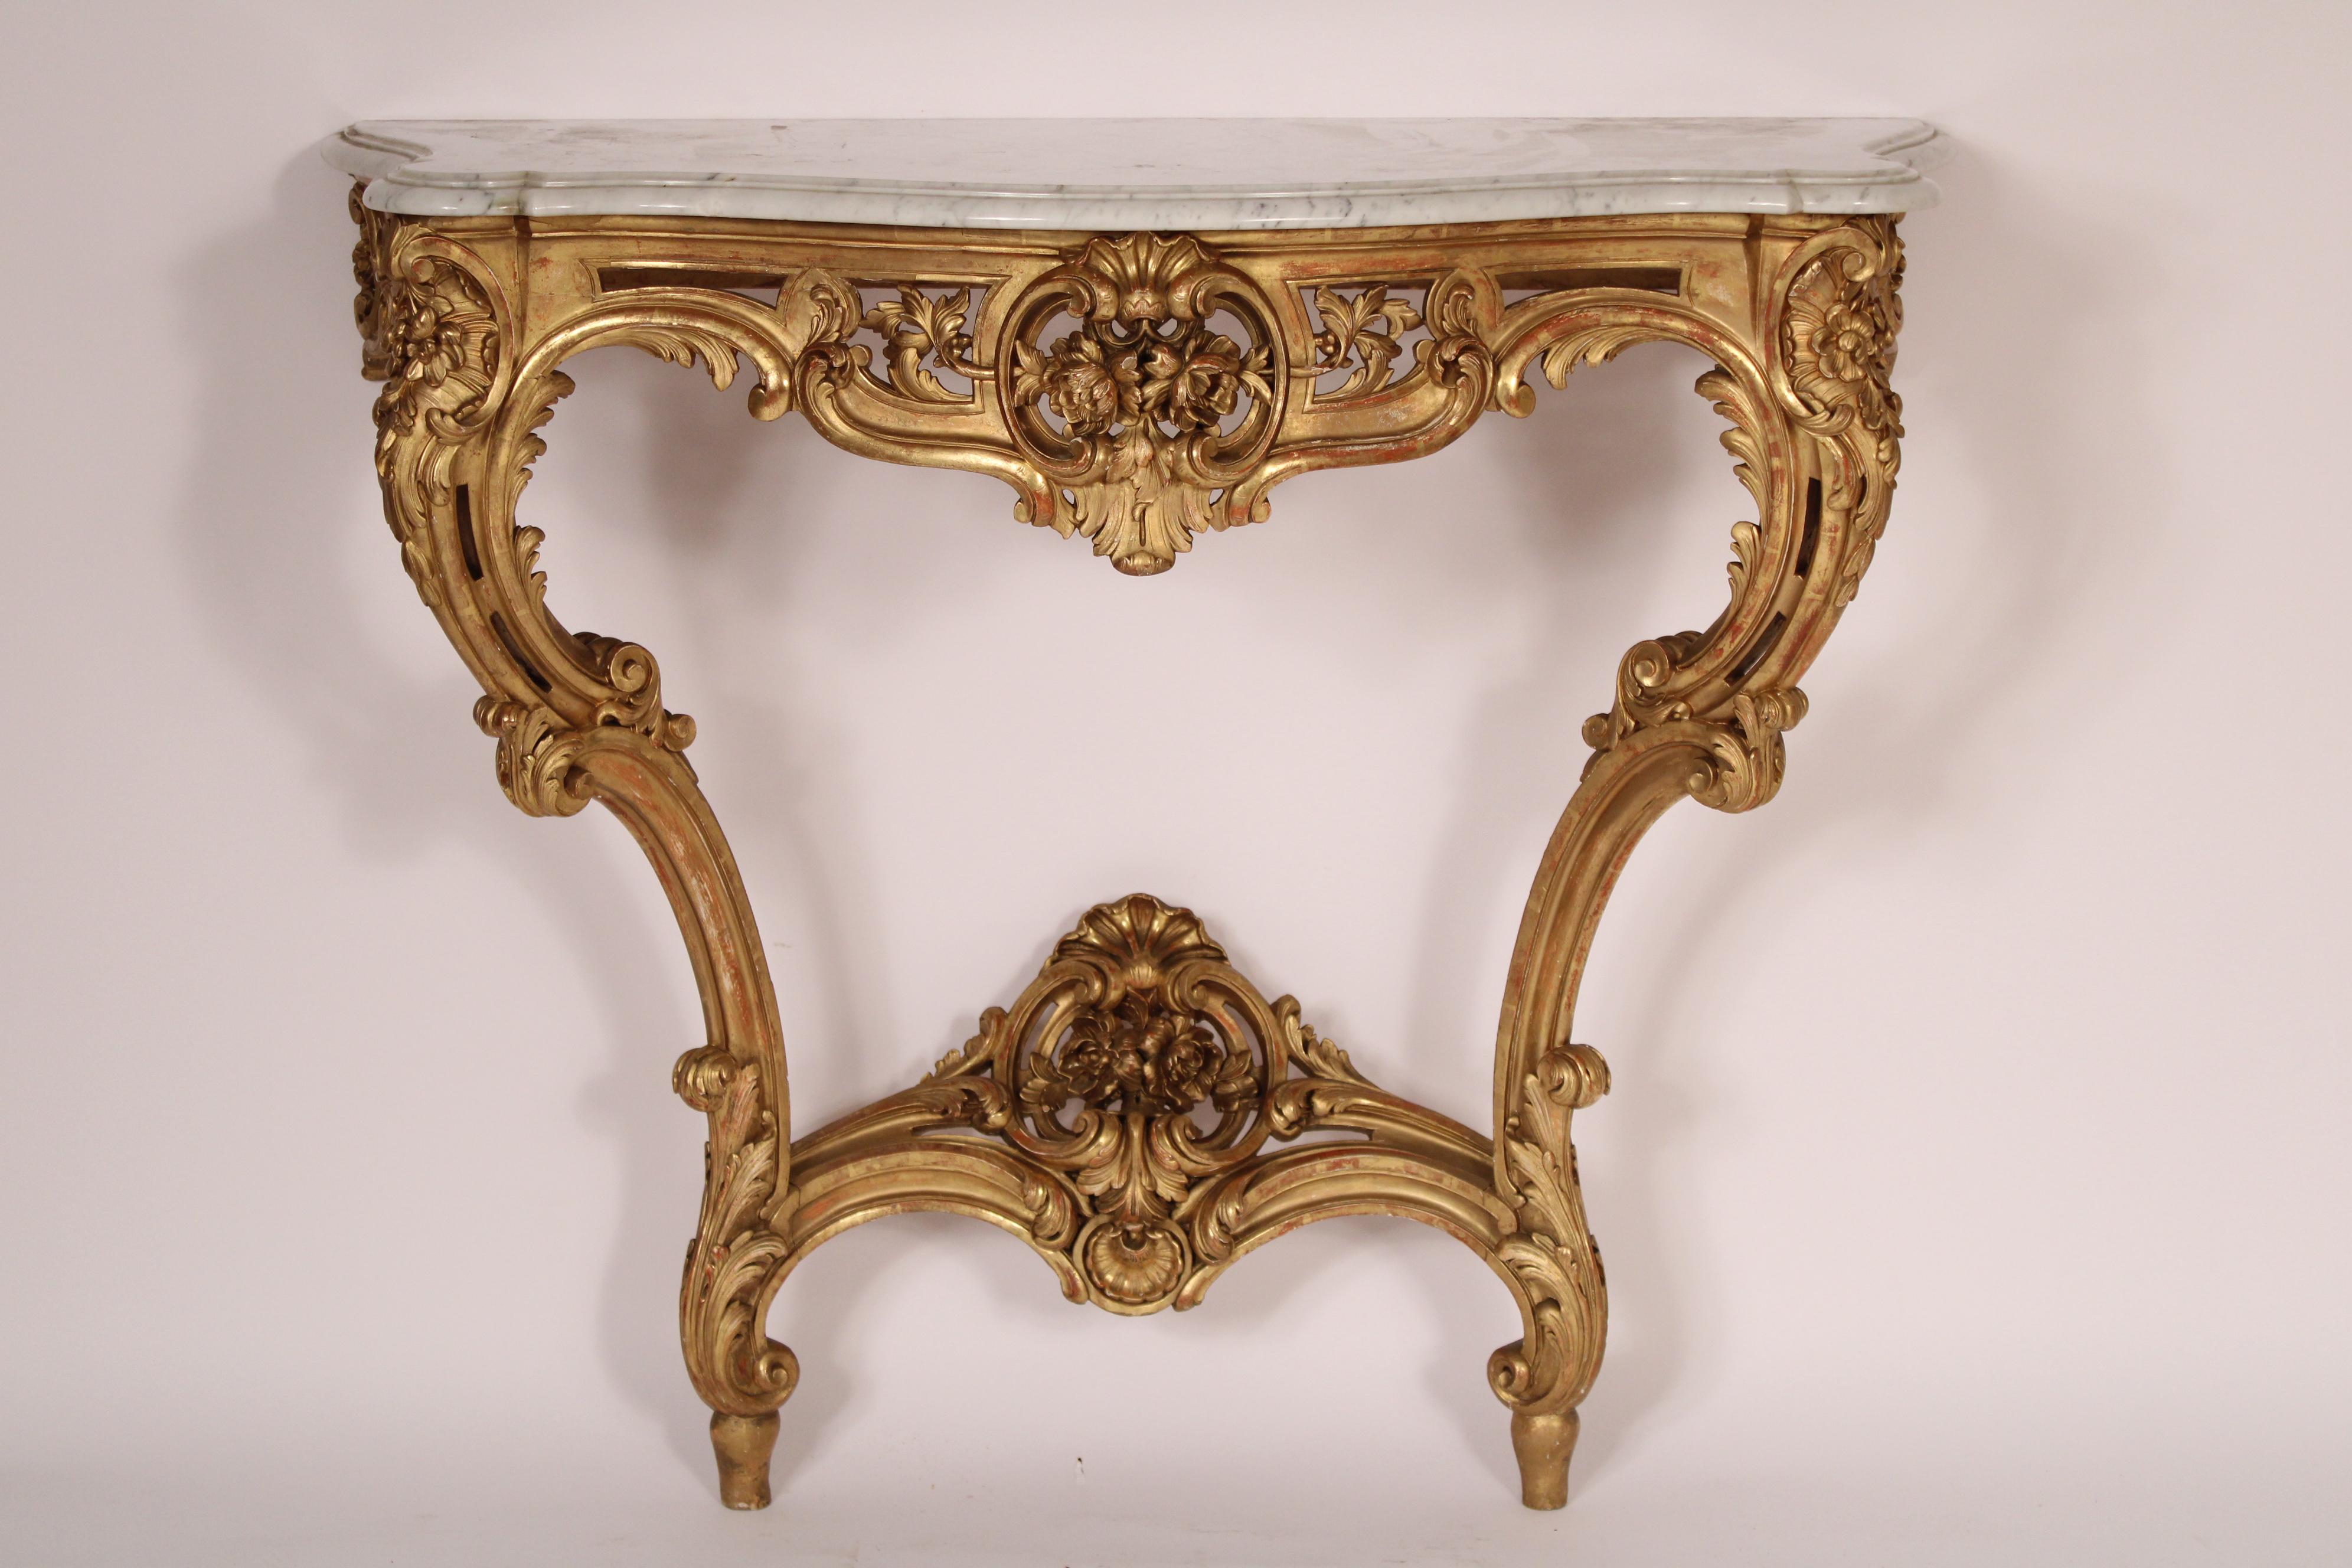 Console ancienne de style Louis XV en bois doré (feuille d'or) avec plateau en marbre, vers 1910. Plateau en marbre de Carrare avec bords avant et latéraux joliment détaillés, frise sculptée de feuillages, pieds cabriole et barre d'appui. 